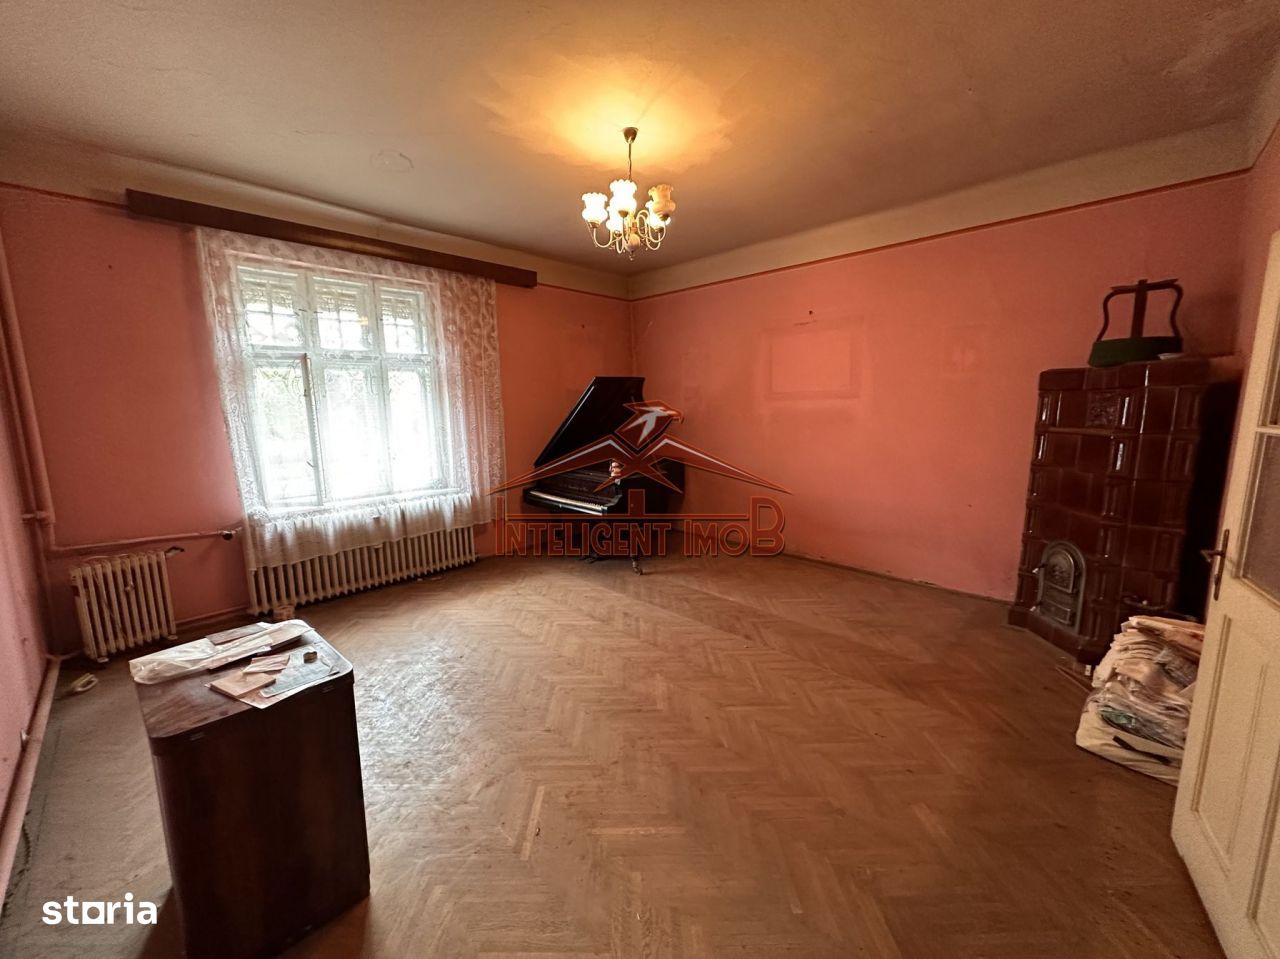 Casa individuala cu 4 camere in Sibiu zona Trei Stejari